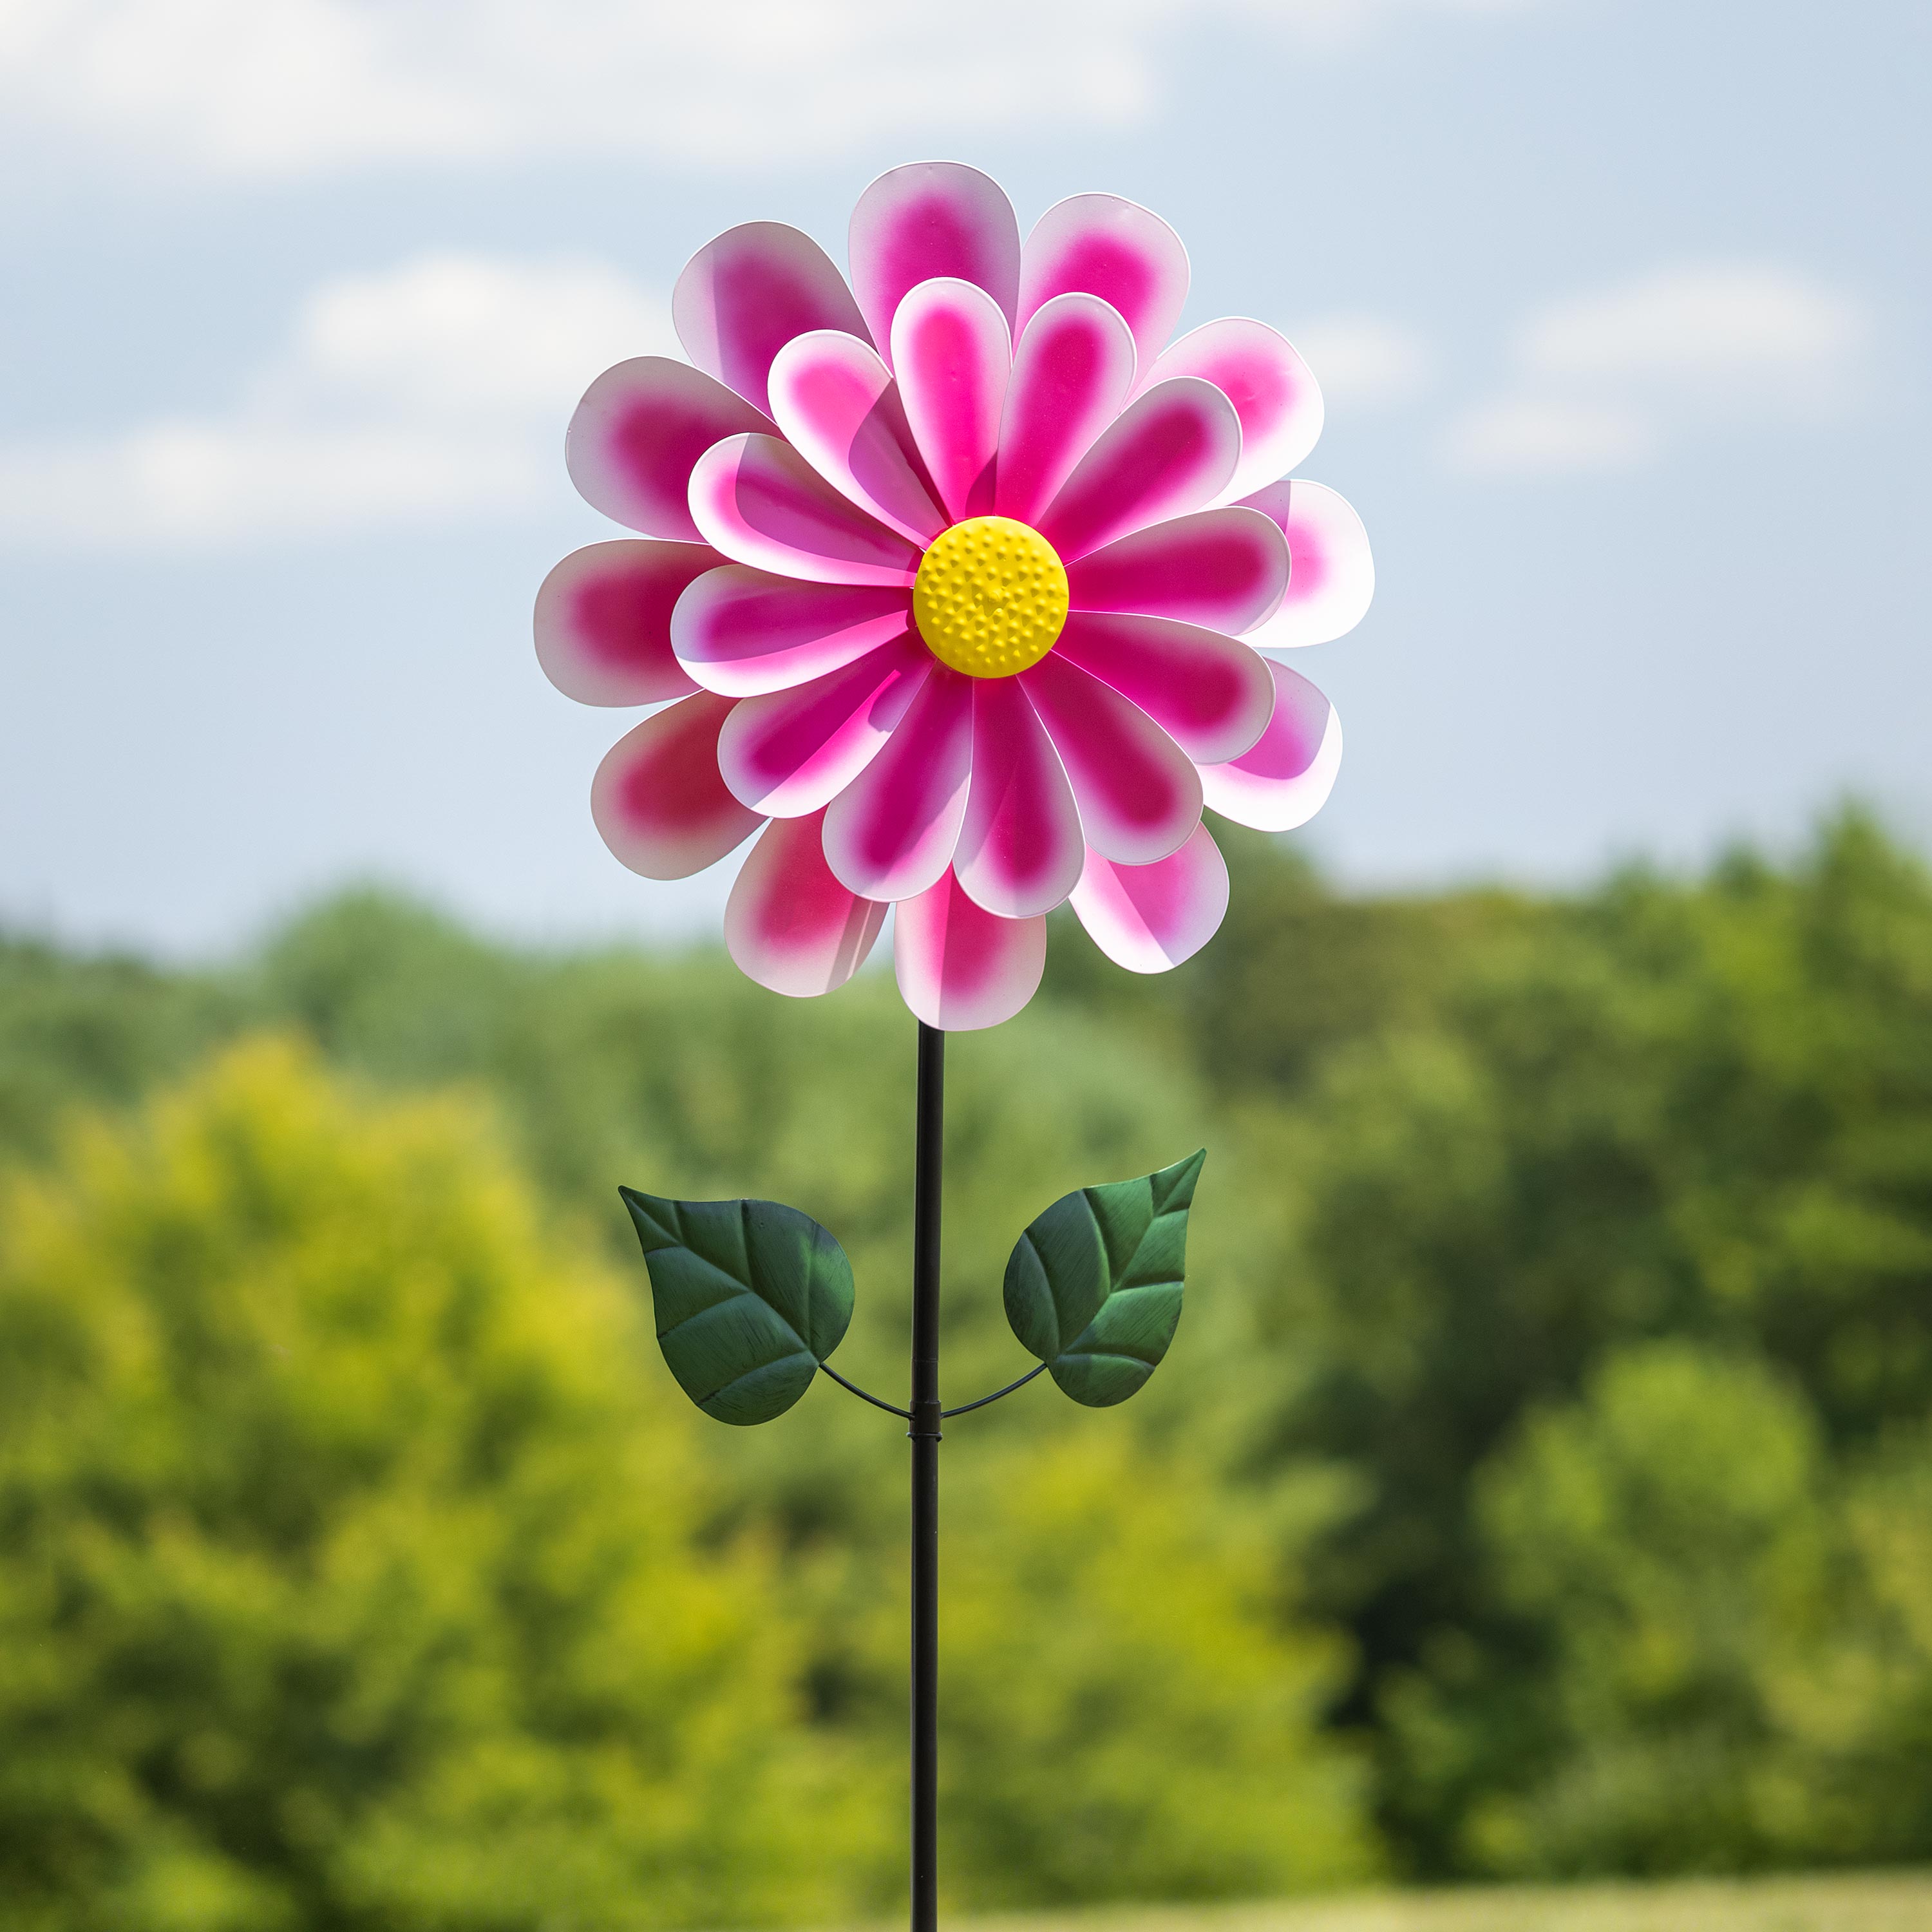 Dahlia Flower Wind Spinner - Pink